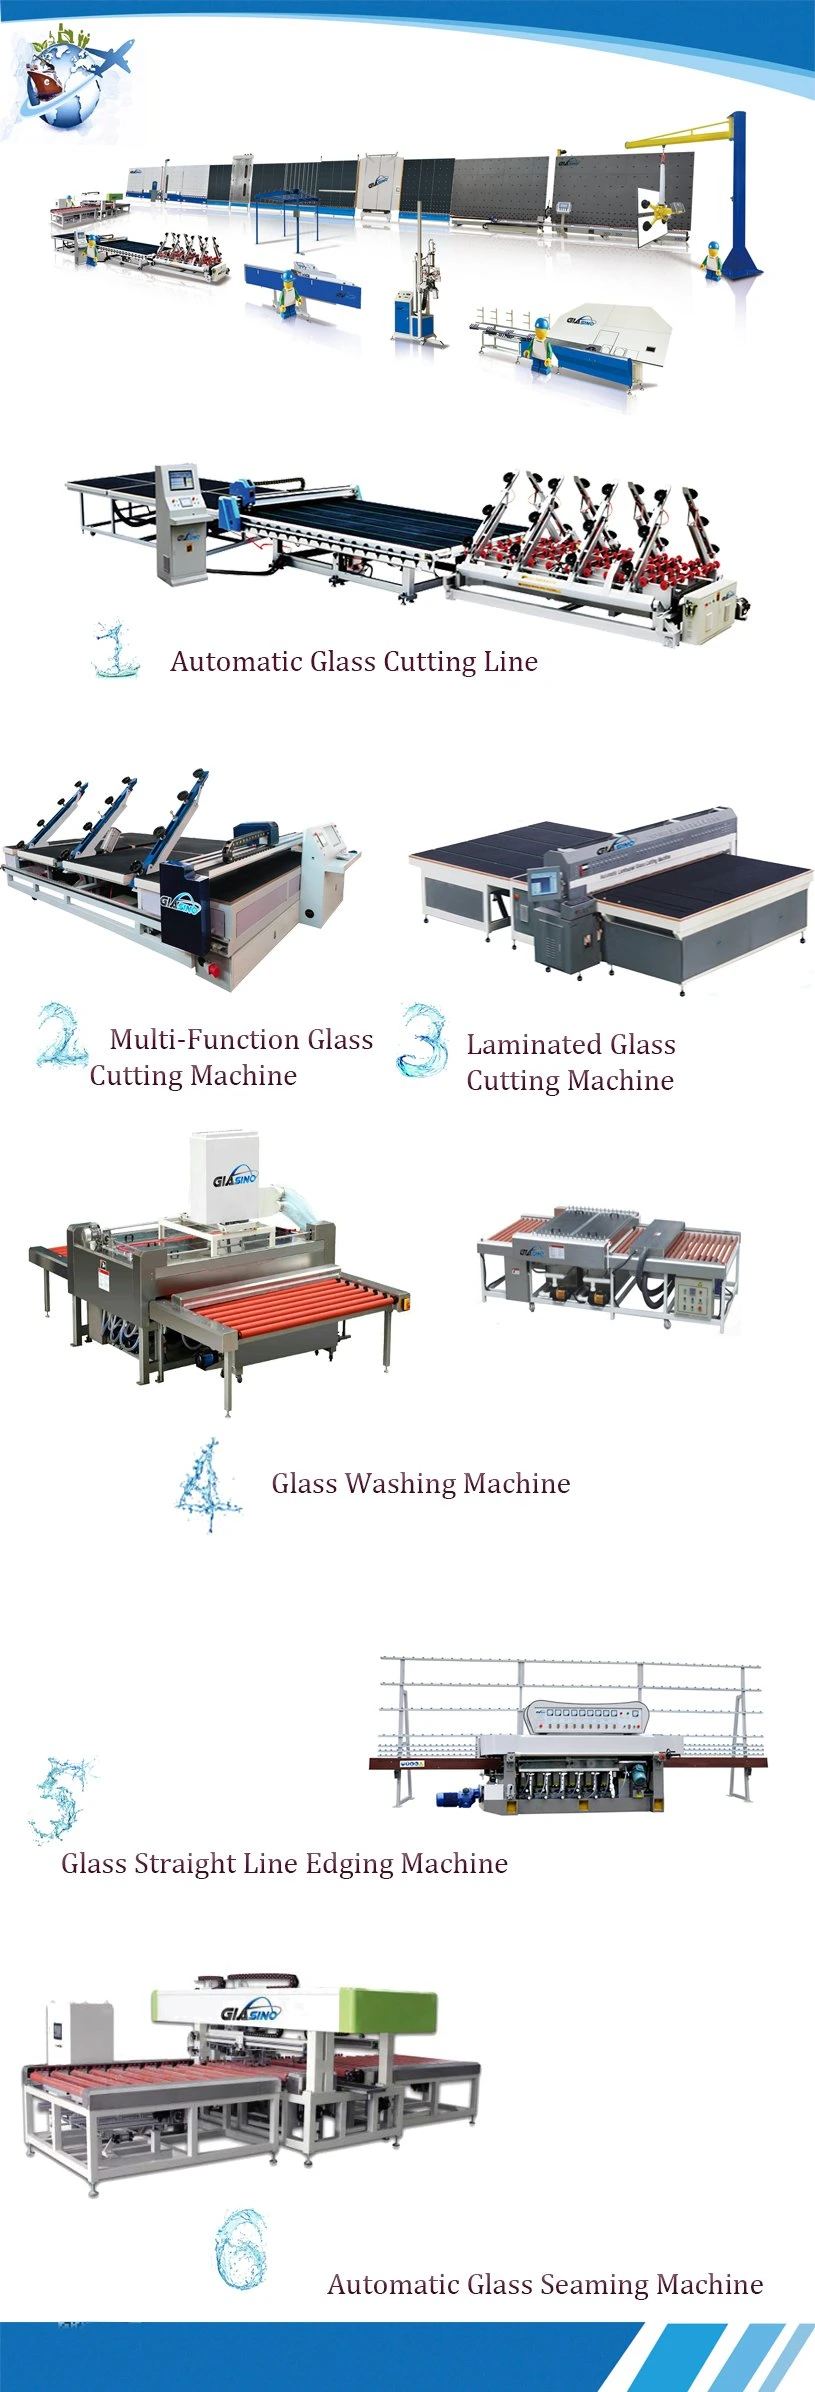 CNC Glass Cutting Machine/Glass Machinery